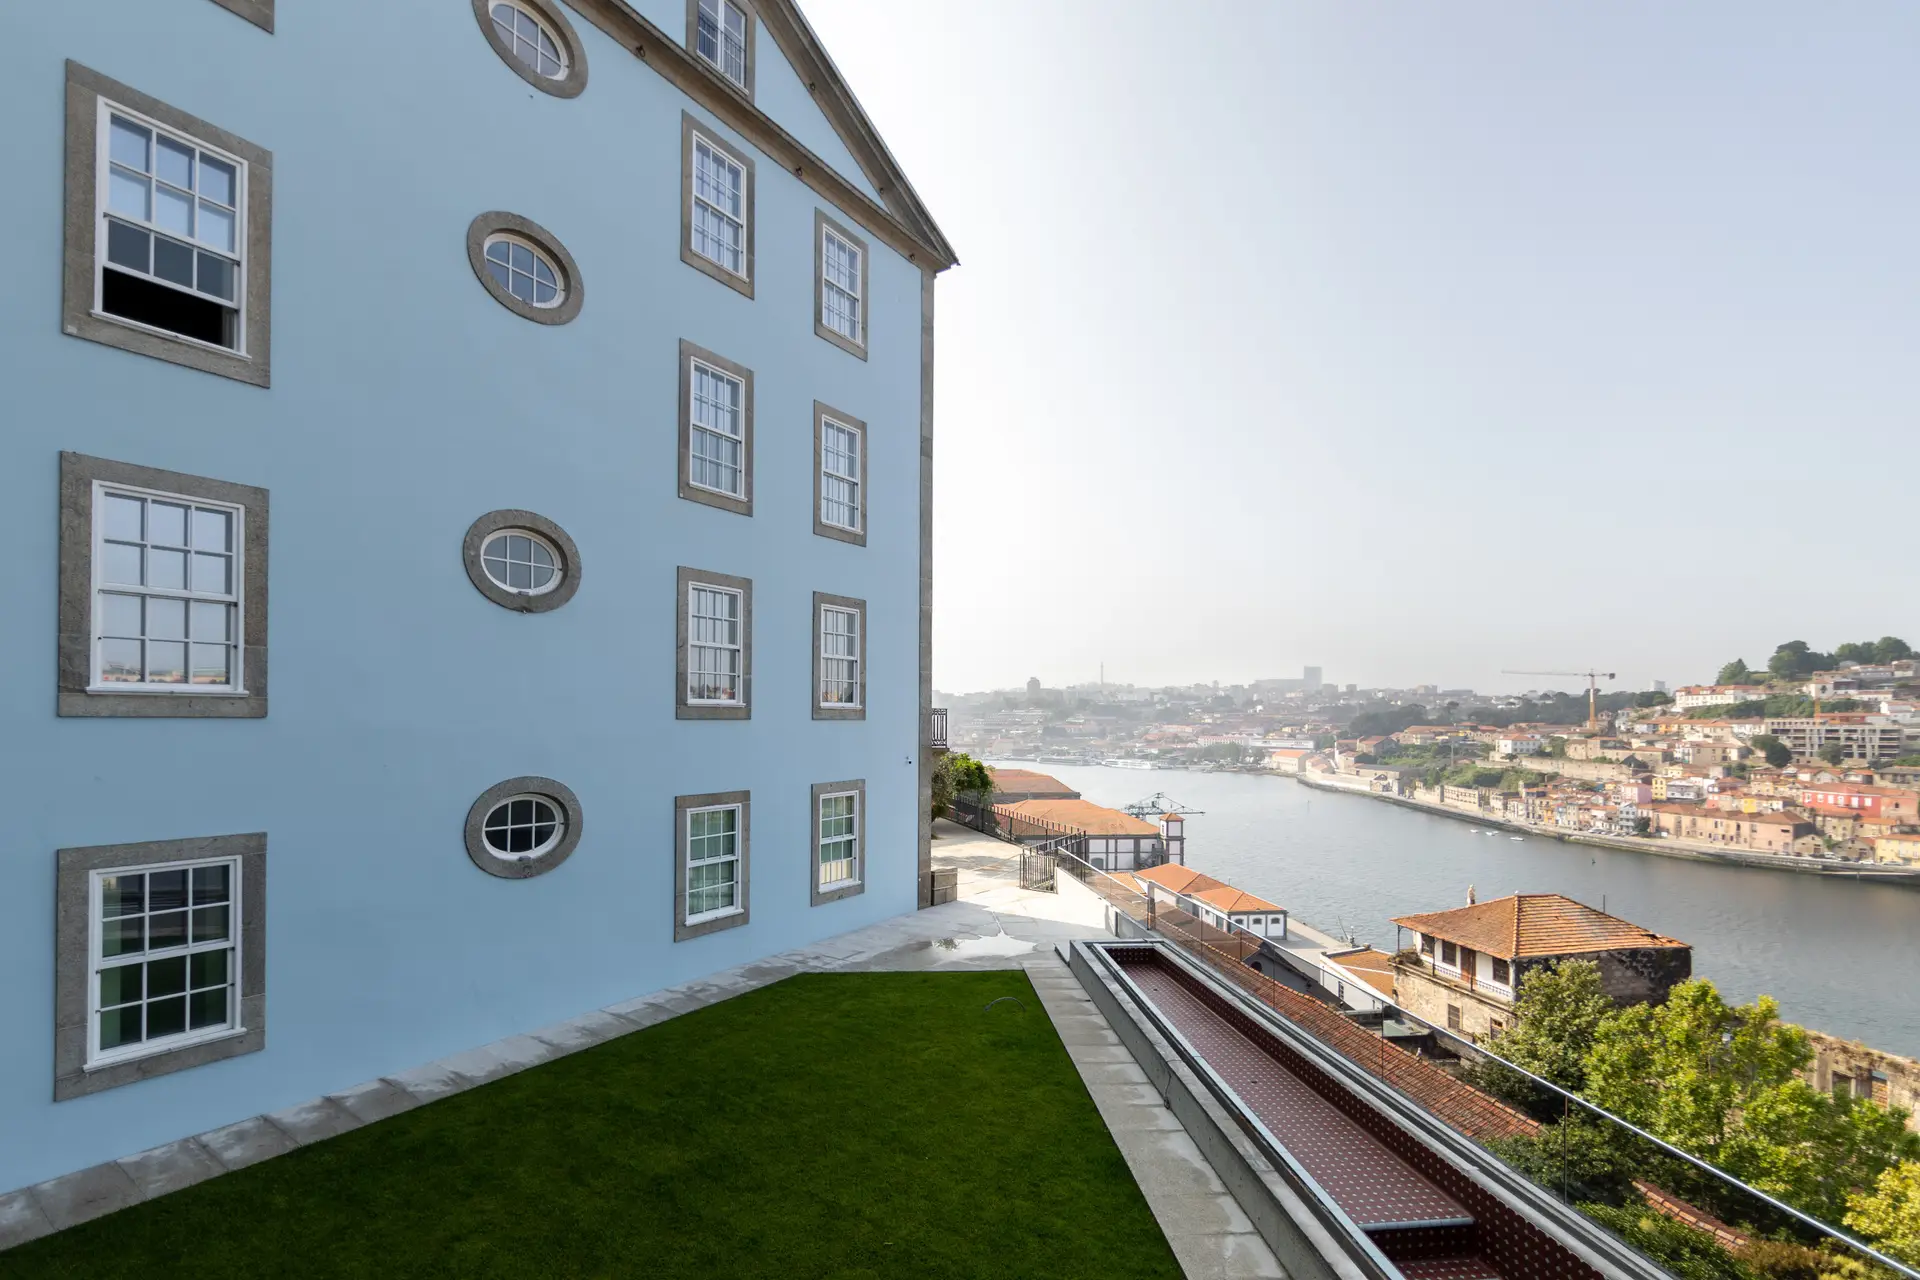 Con impresionantes vistas del Duero y Oporto, esta lujosa casa de huéspedes es también una galería de arte.